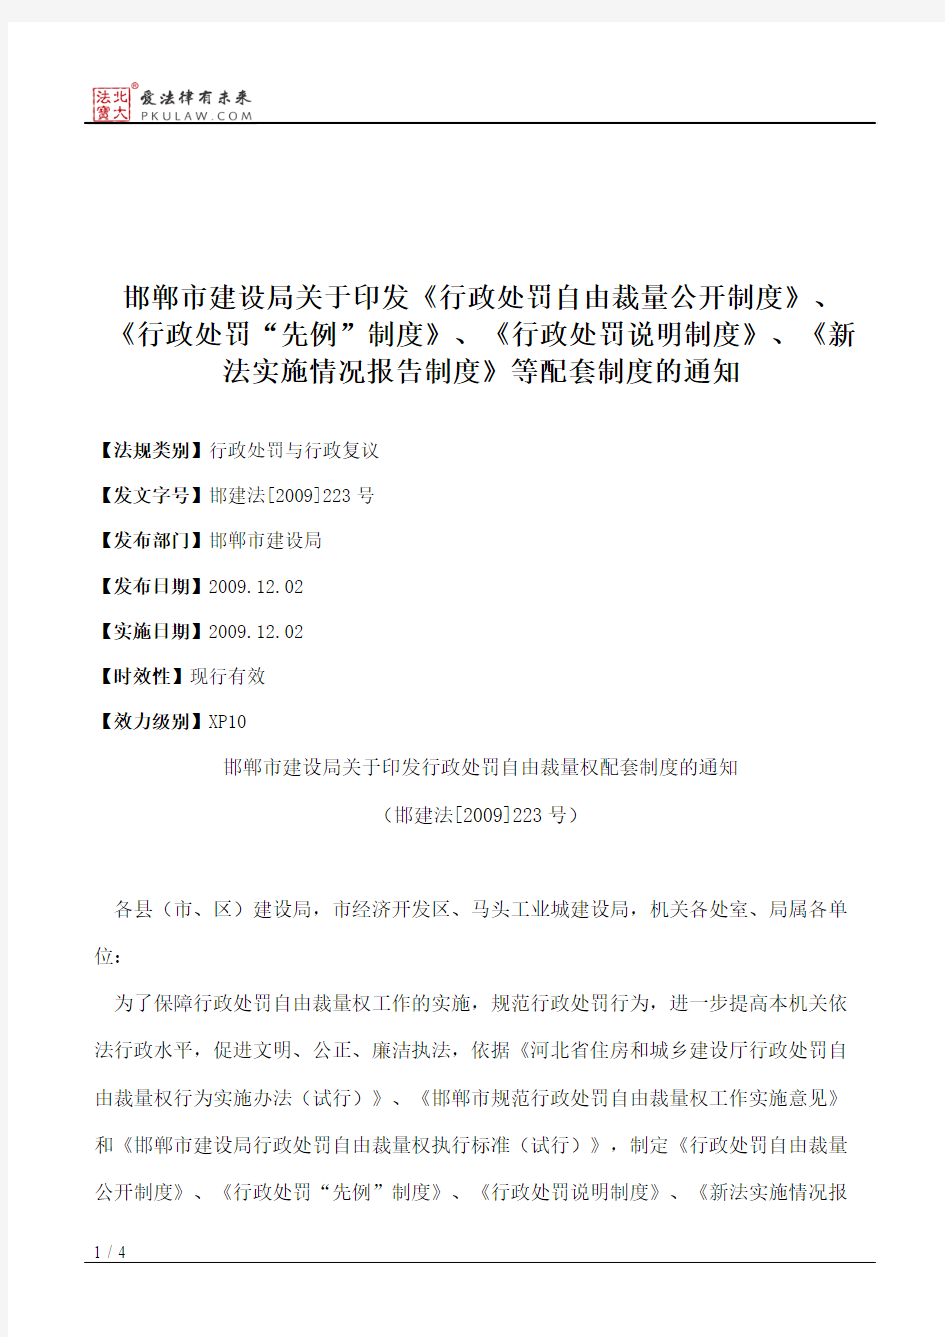 邯郸市建设局关于印发《行政处罚自由裁量公开制度》、《行政处罚